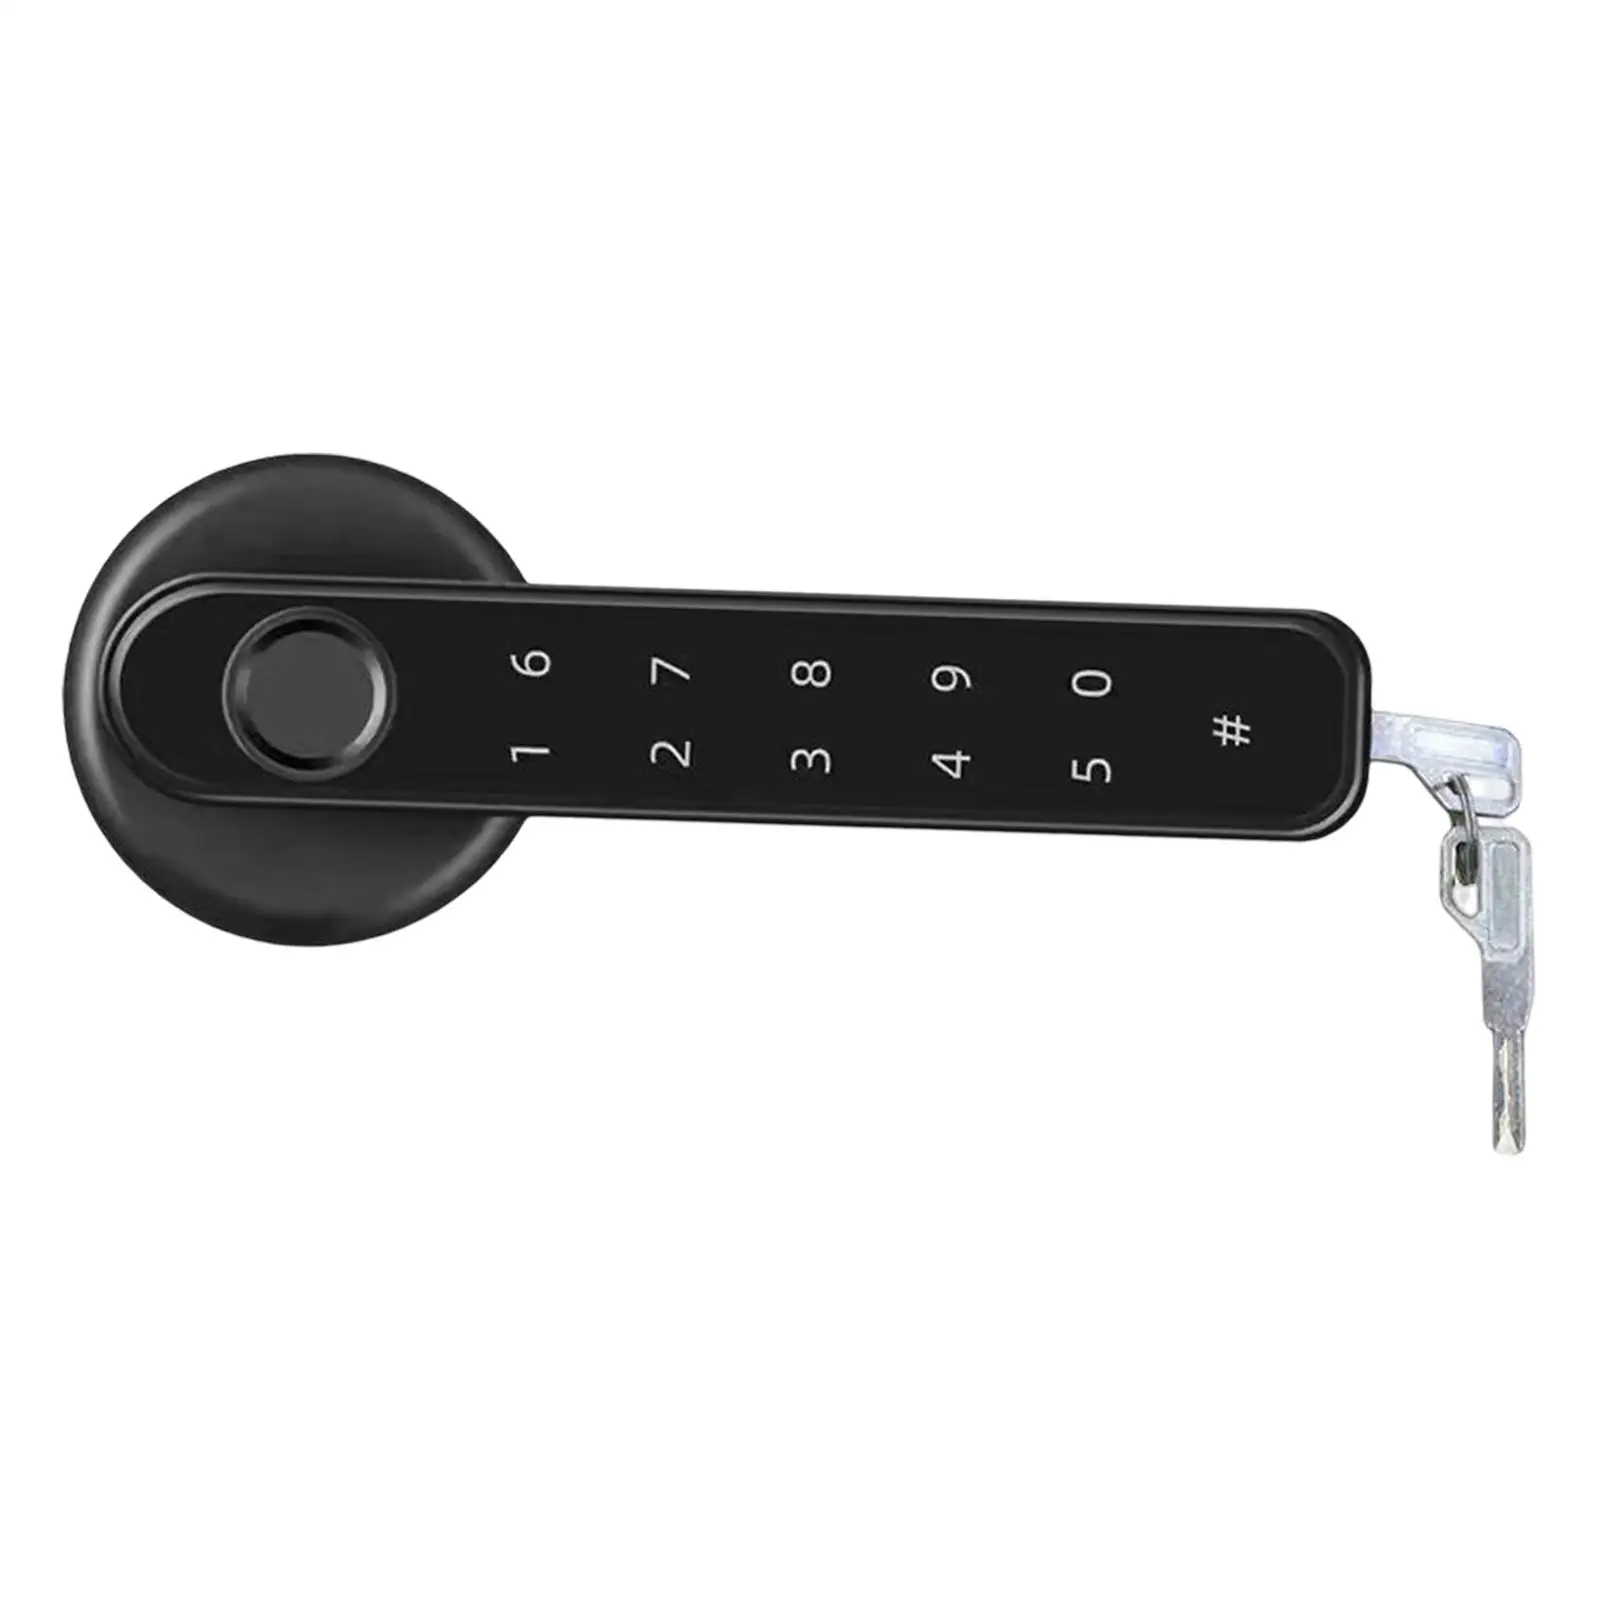 Fingerprint Door Lock Easy to Install Keyless Door Lock Apartment Home